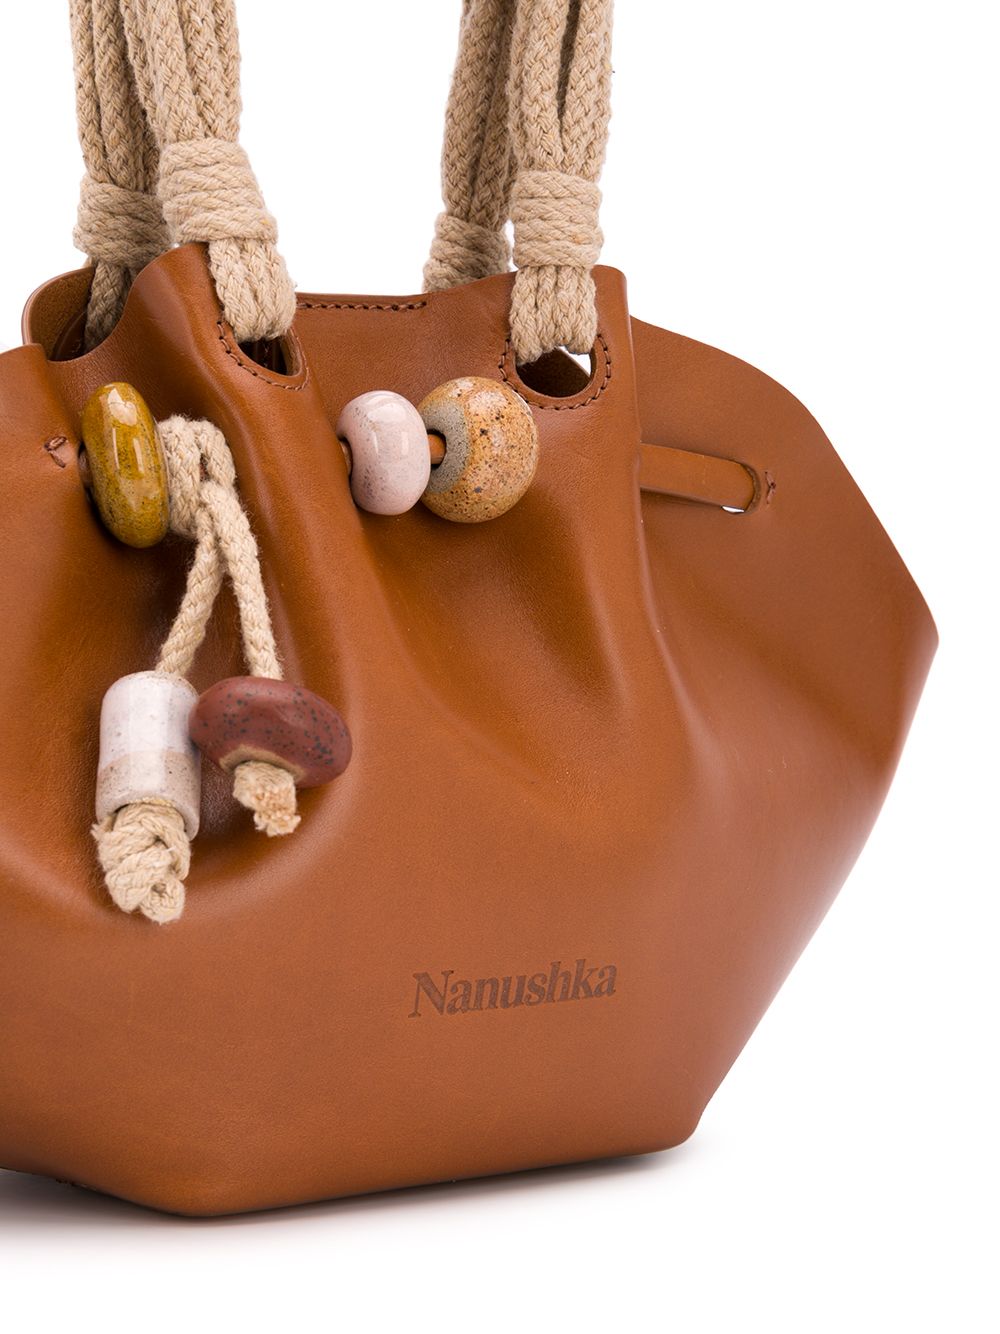 фото Nanushka декорированная сумка-тоут